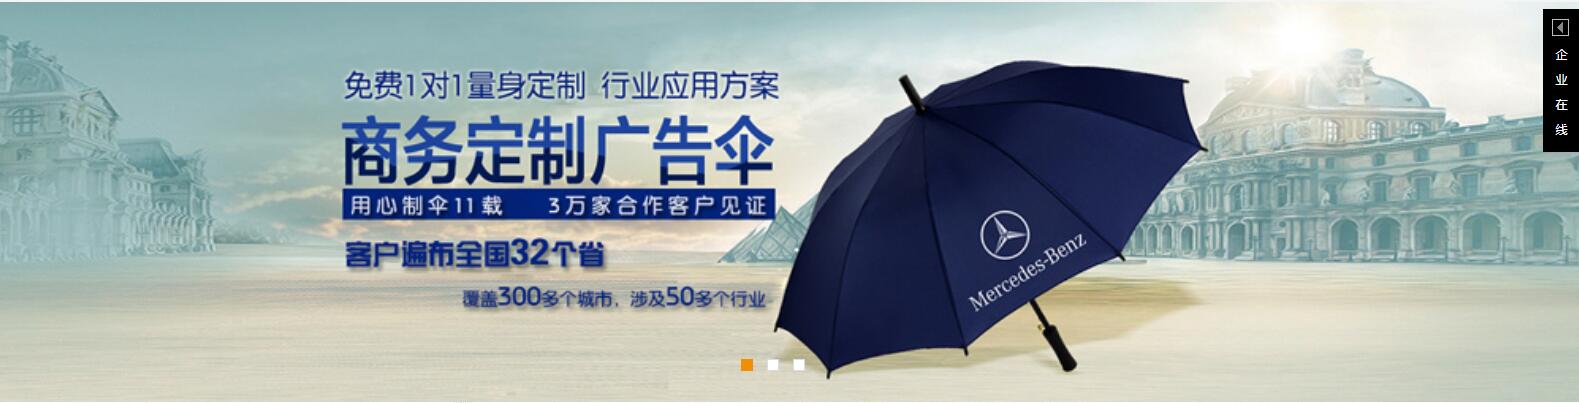 惠州雨伞工厂